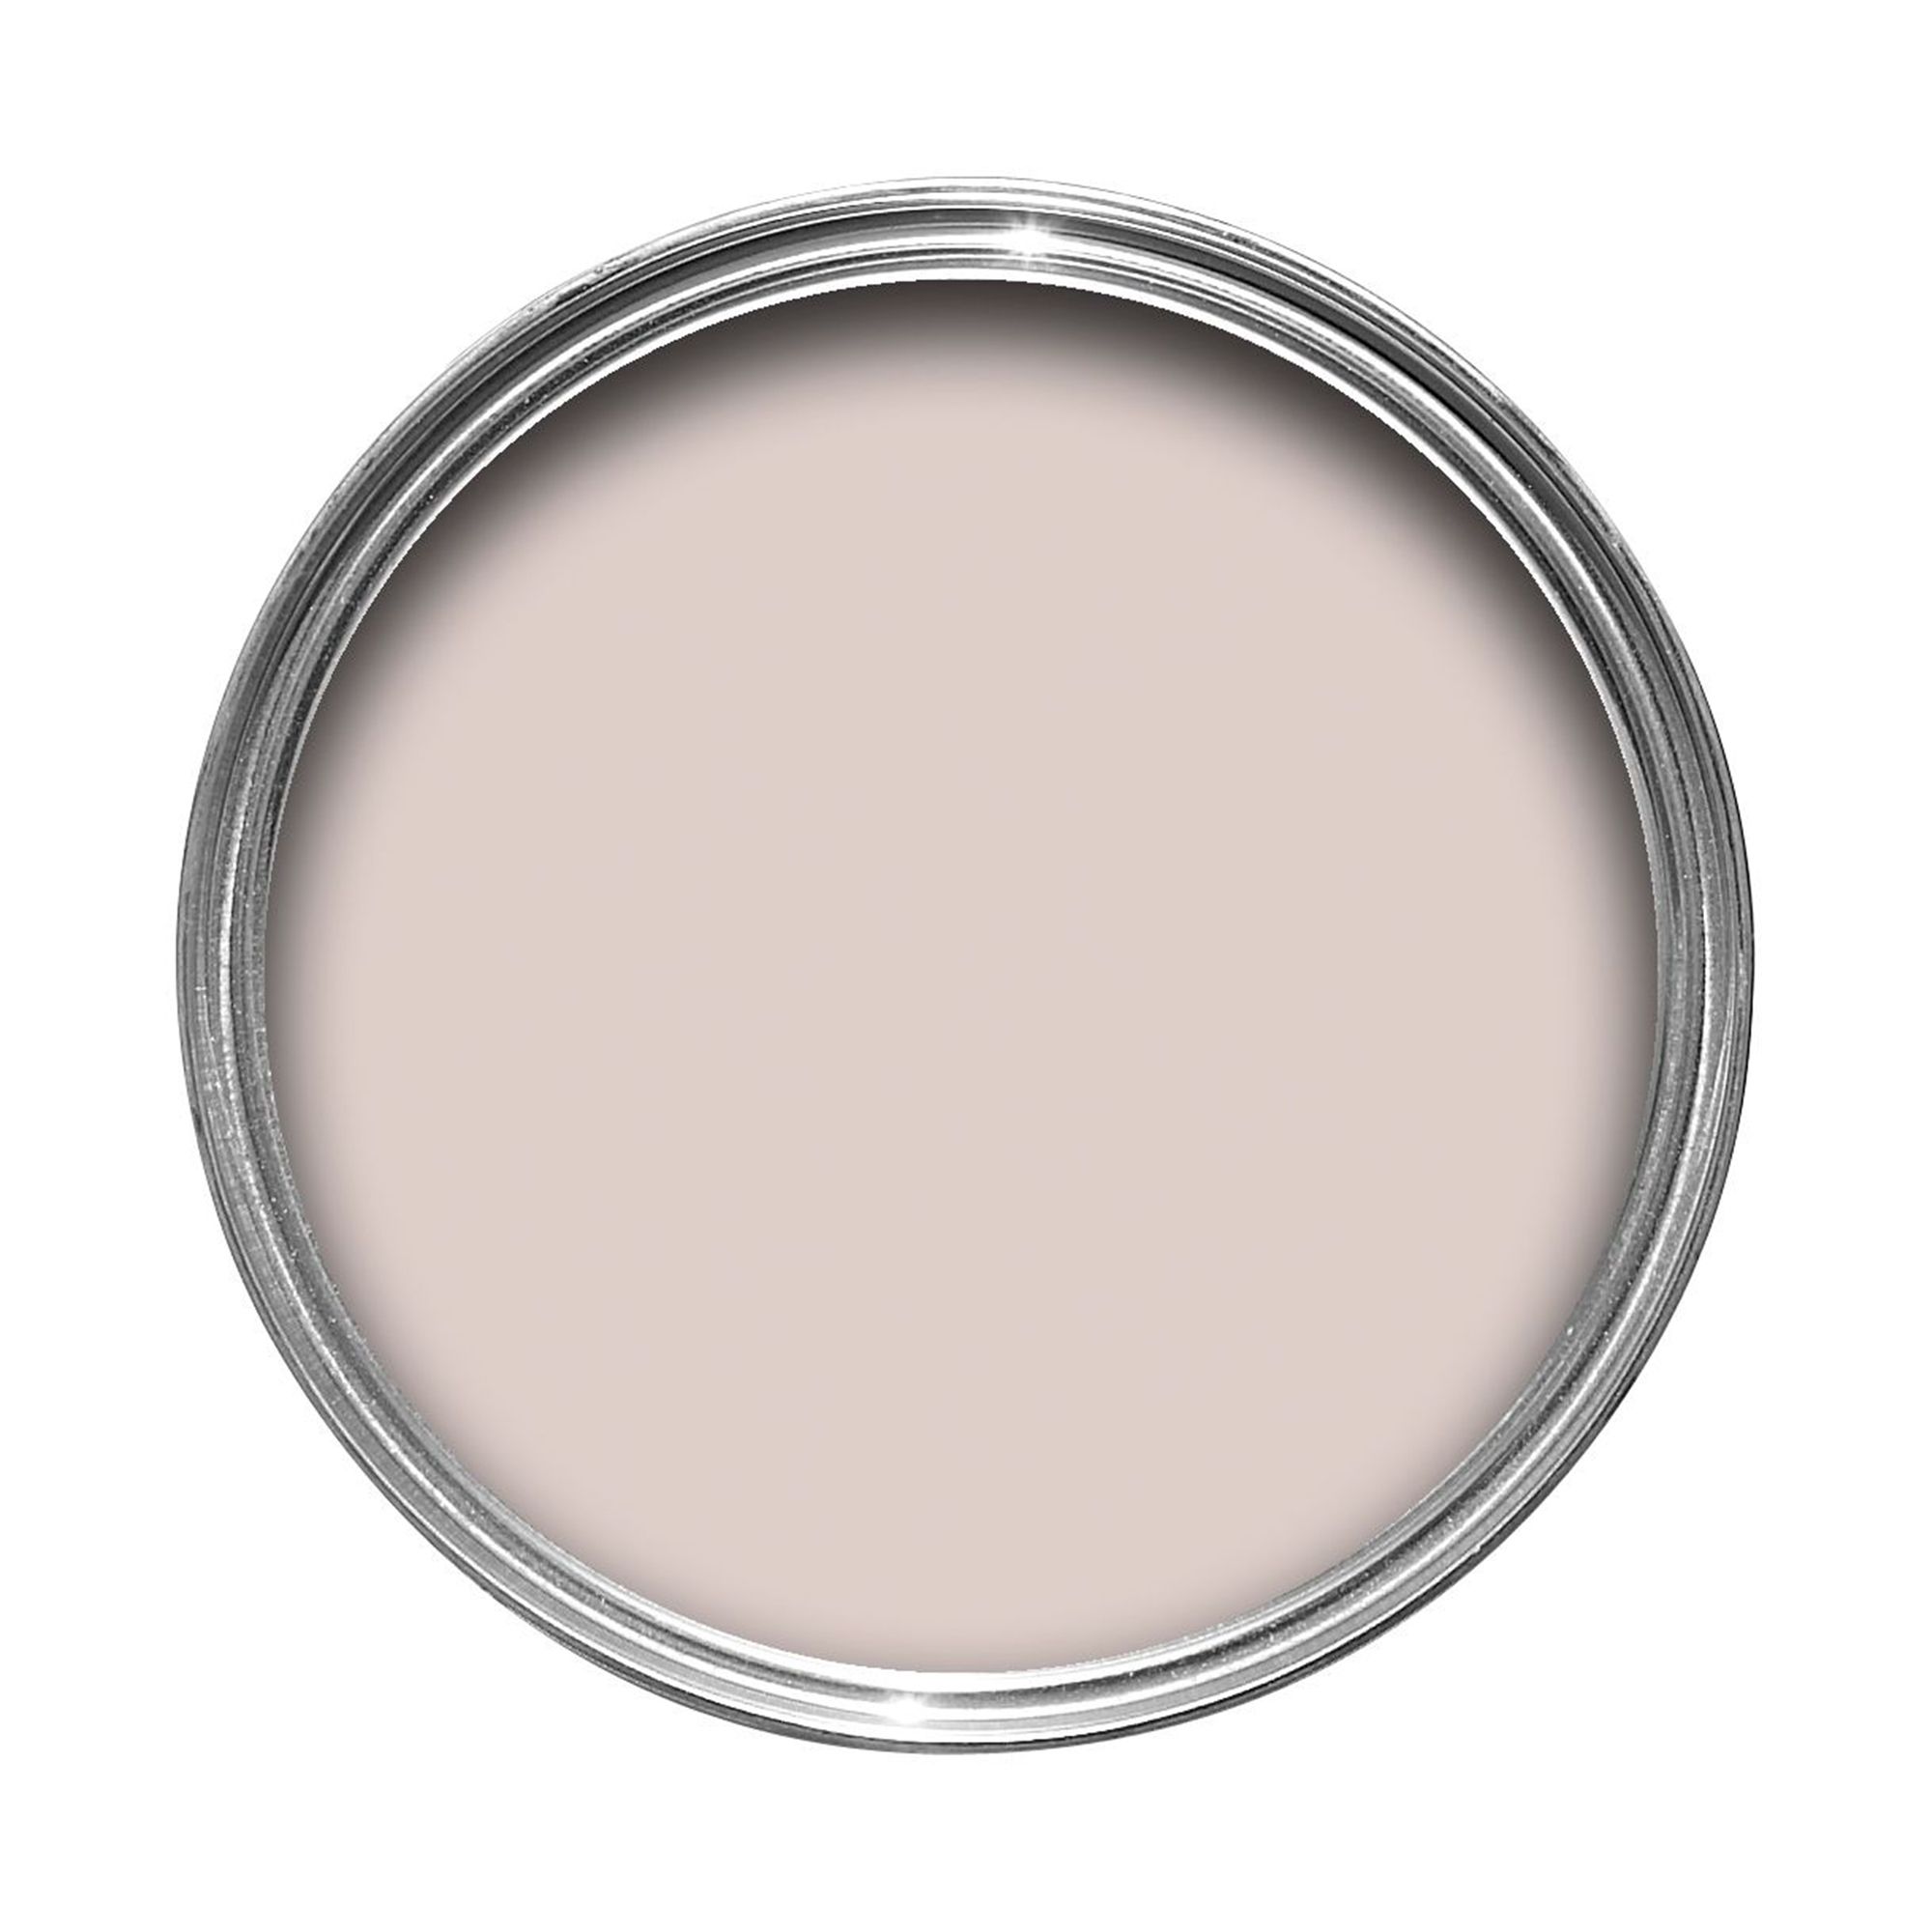 Dulux Easycare Mellow mocha Soft sheen Emulsion paint, 2.5L